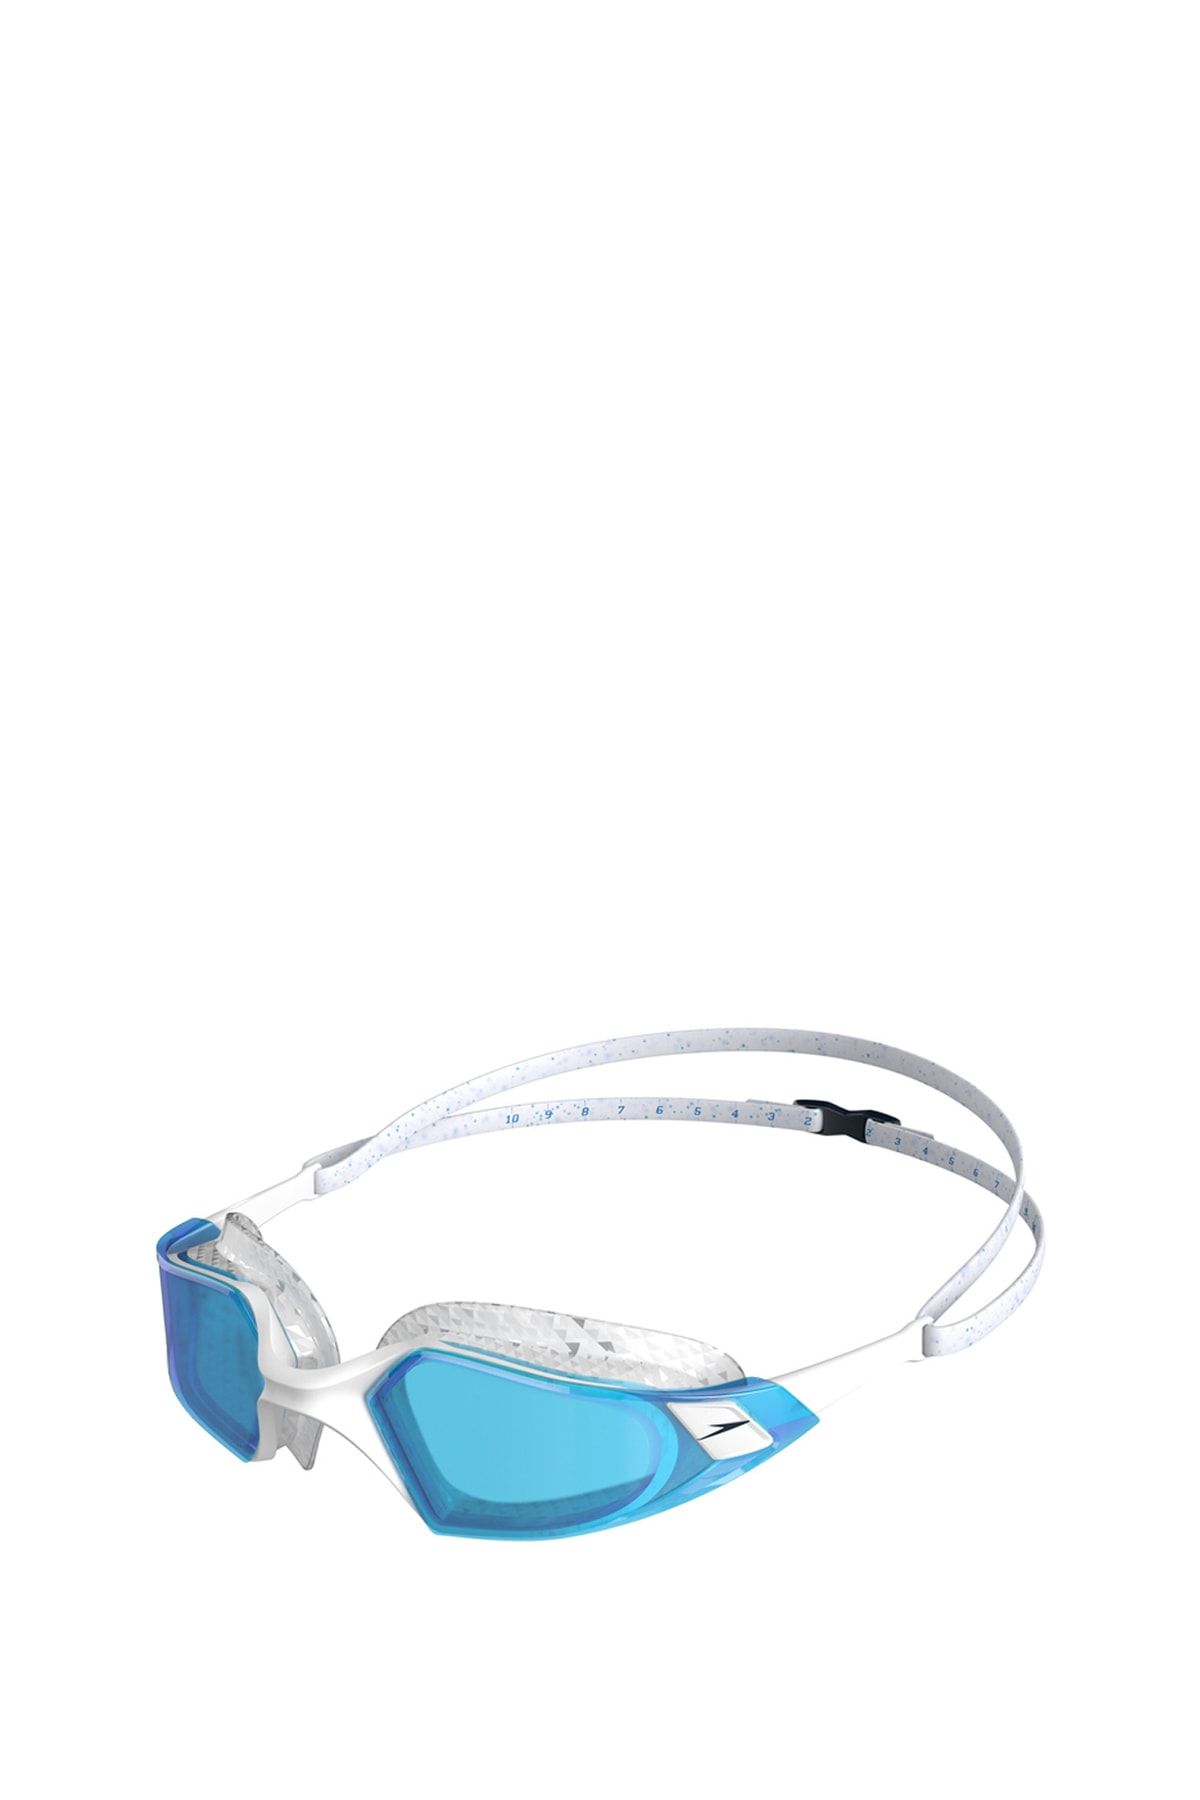 SPEEDO Beyaz - Mavi Yüzücü Gözlüğü 8-12264d641 Aquapulse Pro Go